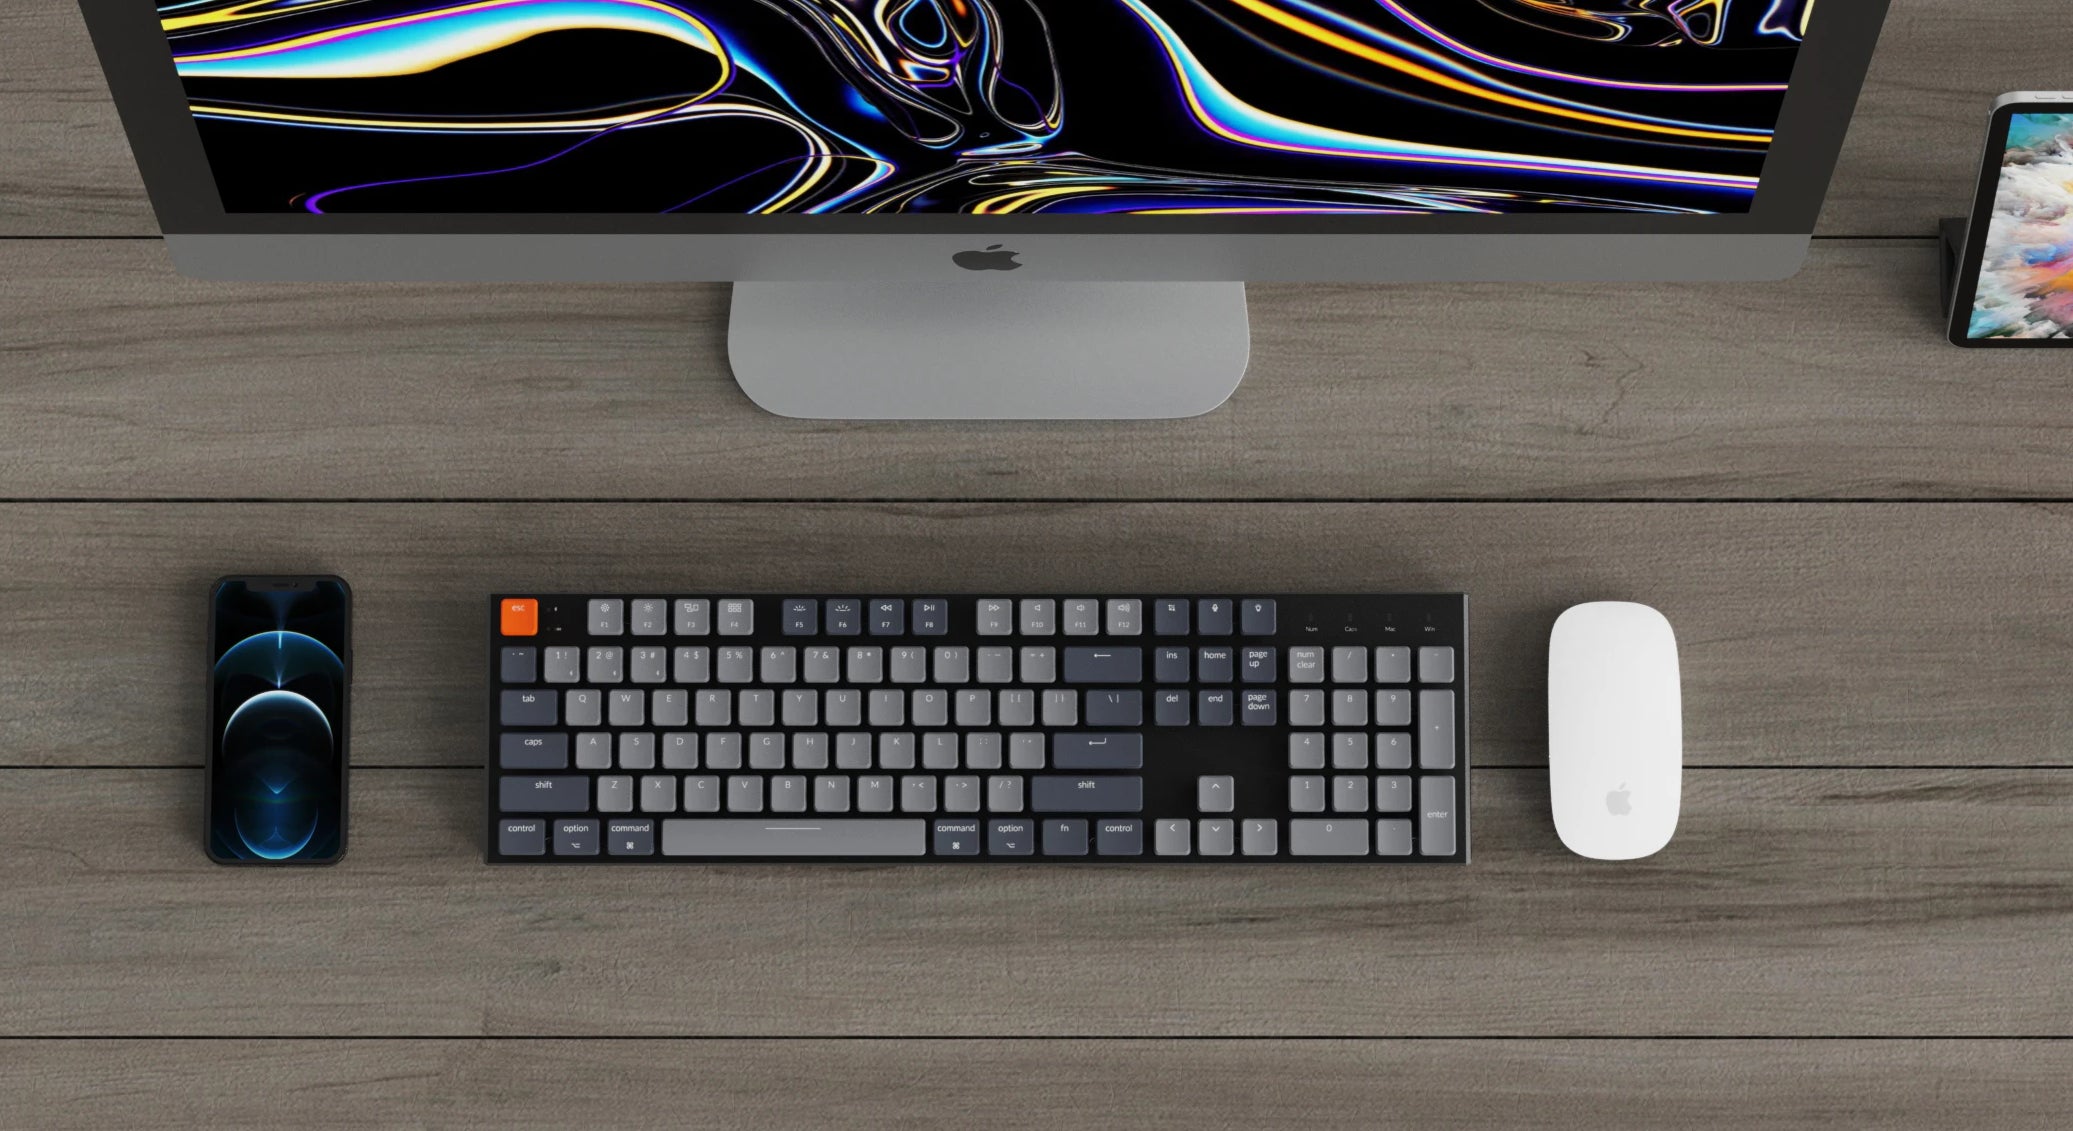 Keychron K1 ultra-slim wireless mechanical keyboard for Mac Windows 87 keys - Gateron low profile mechanical switch RGB backlight